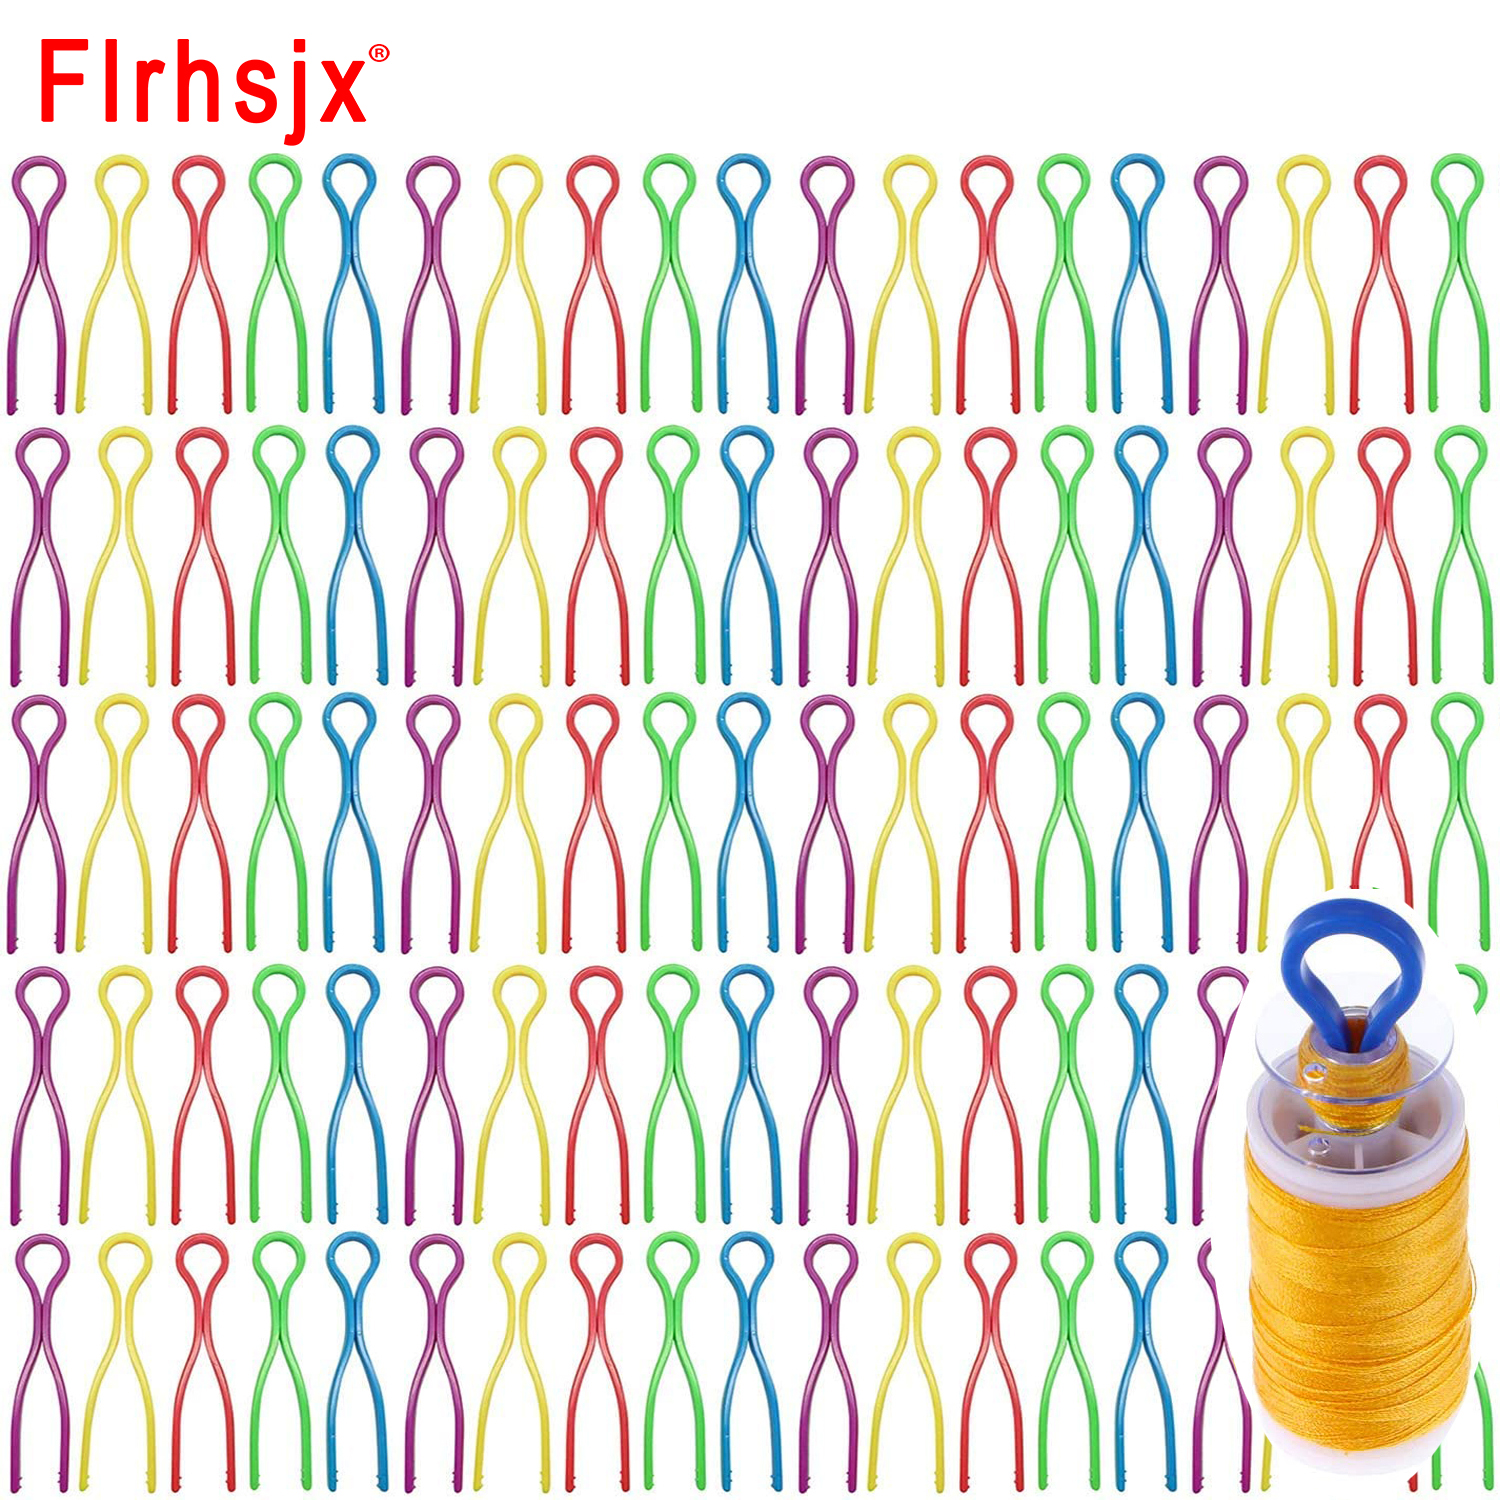 Flrhsjx 10 / 2.64 pouces coudre des clips de bobine mélangés